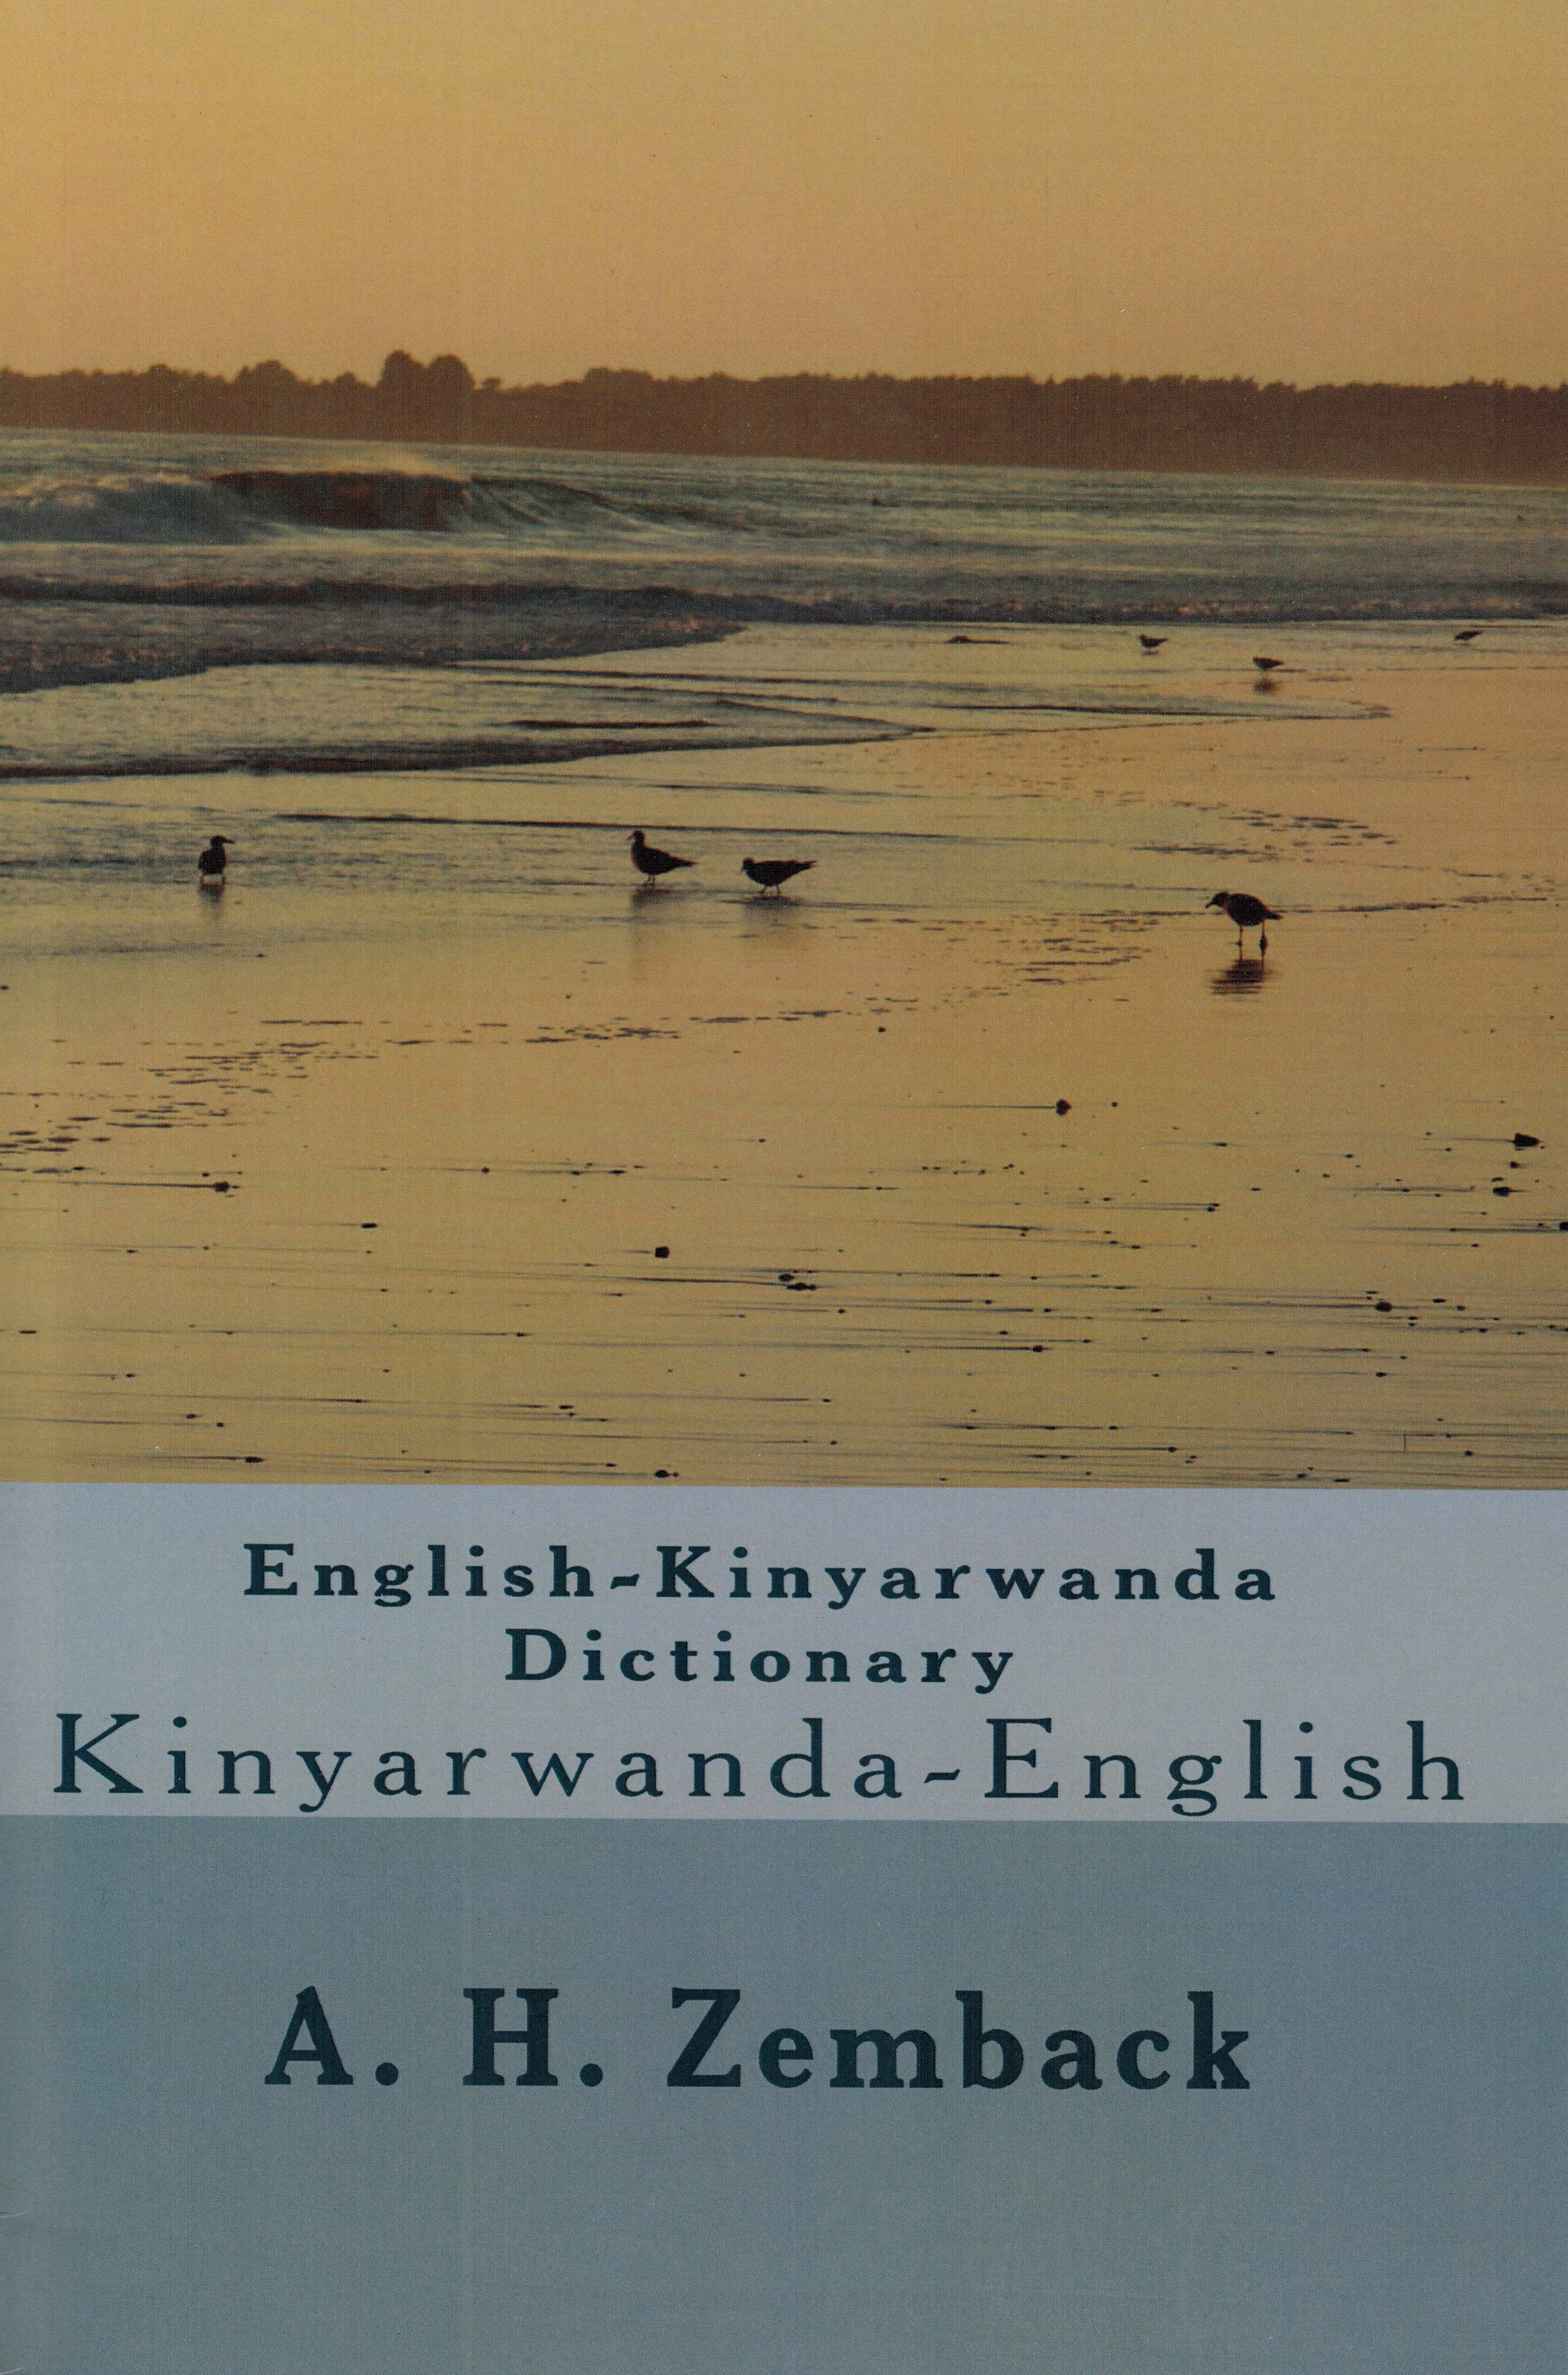 Kinyarwanda-English / English - Kinyarwanda Dictionary